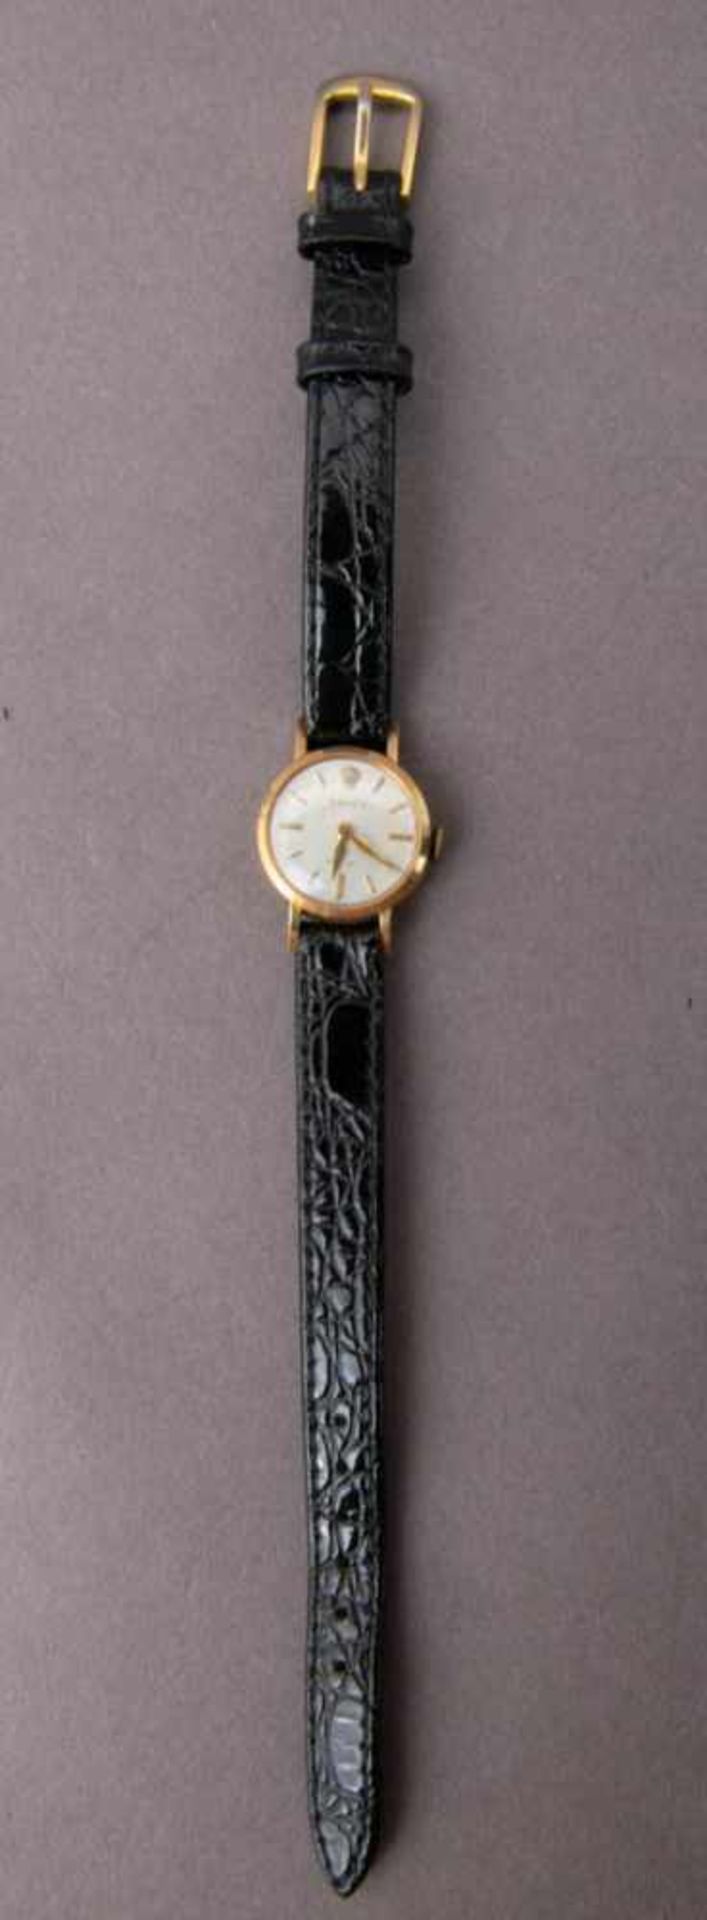 ROLEX - Frühe Damenarmbanduhr. 585er Gelbgoldgehäuse an ergänzten Lederarmband, wohl 1950er Jahre. - Image 3 of 4